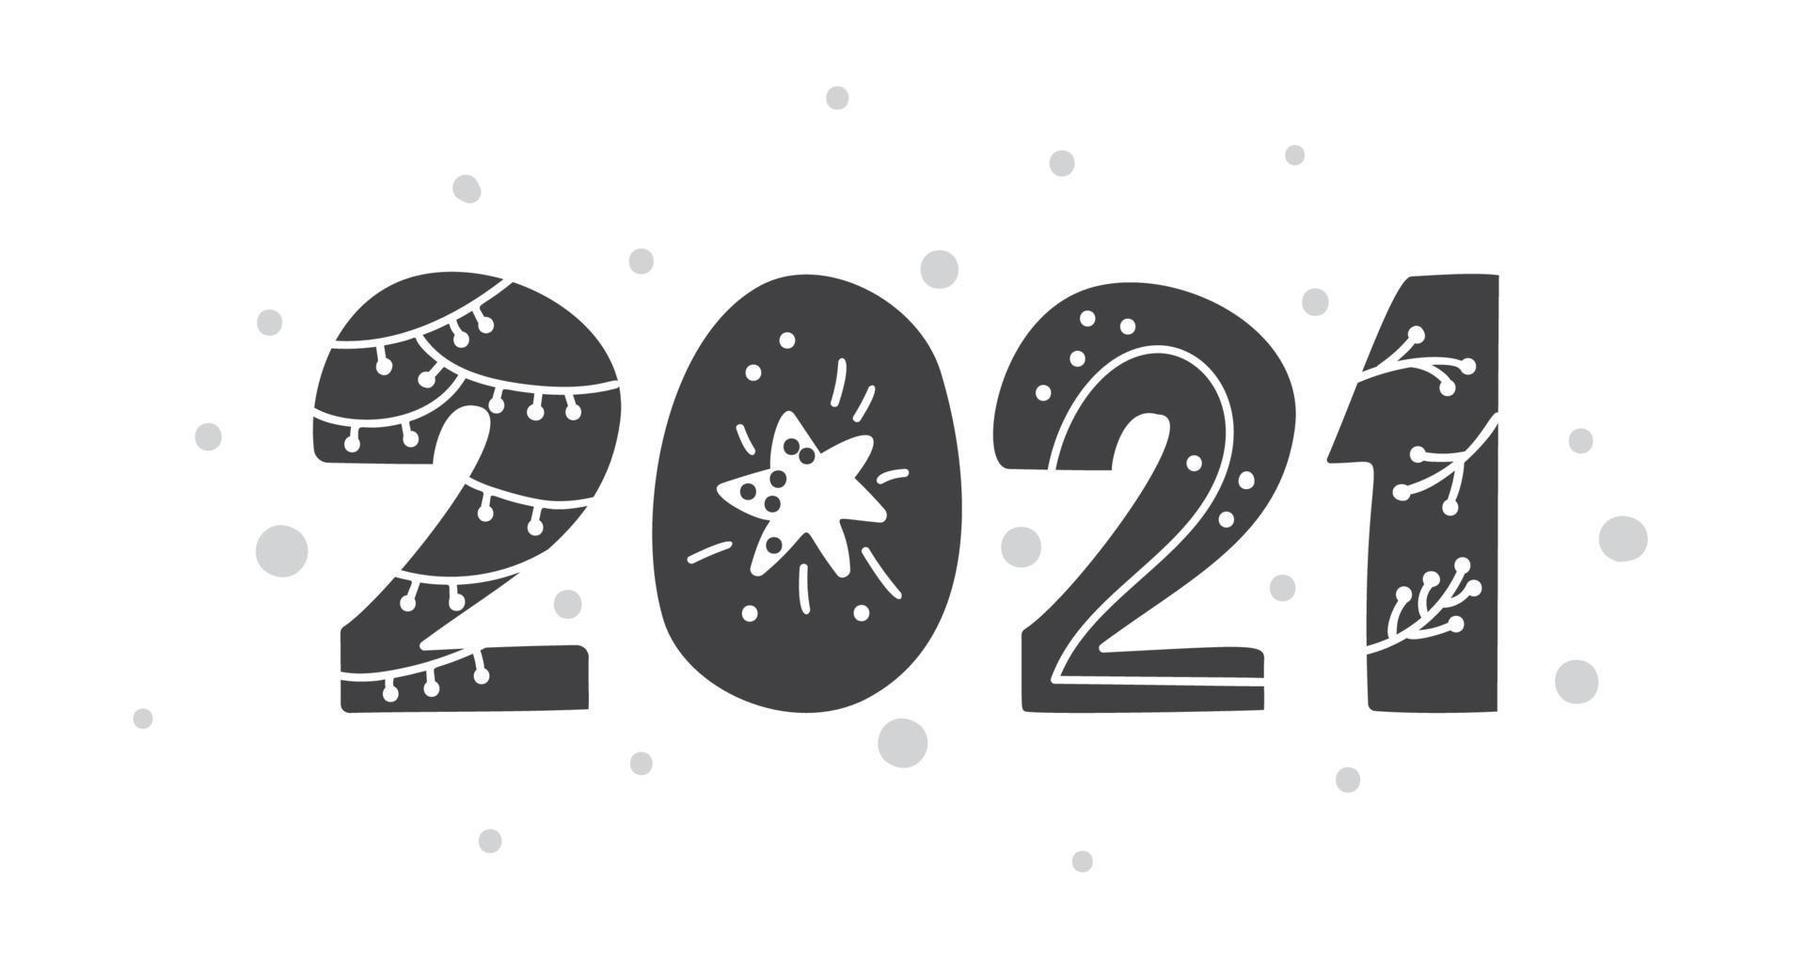 gelukkig nieuwjaar 2021 logo tekstontwerp scandinavische stijl. zwart-witte kleur. eenvoudige decoratie op platte ontwerpstijl. pictogram voor nieuwjaar vieren. vector